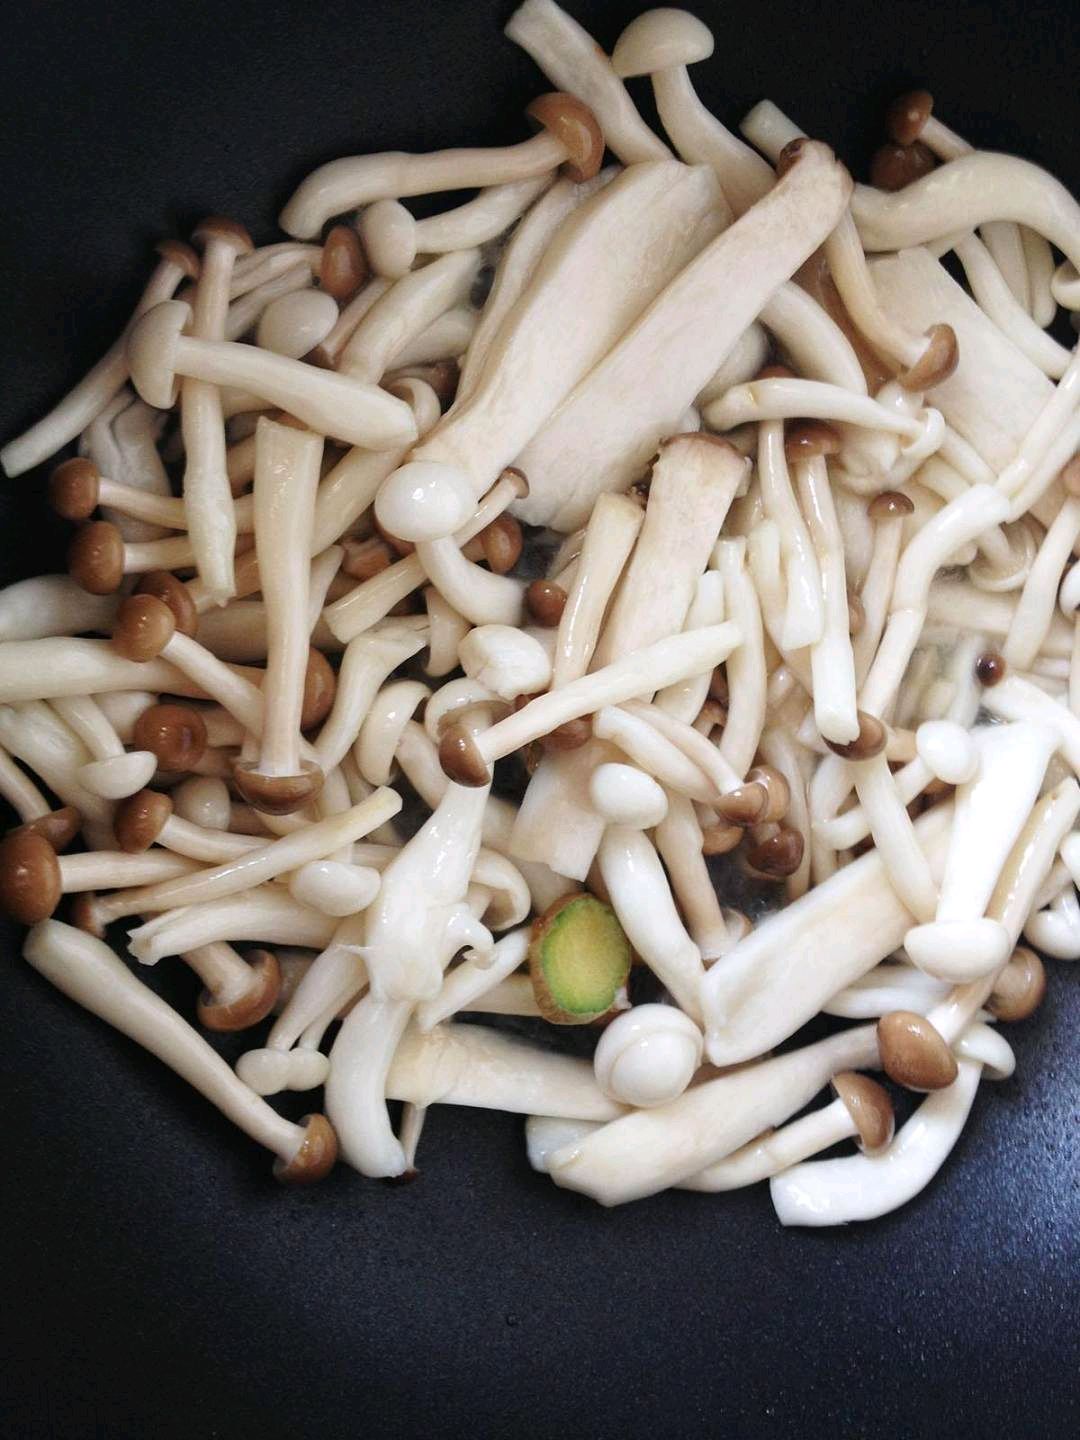 菌菇汤的做法